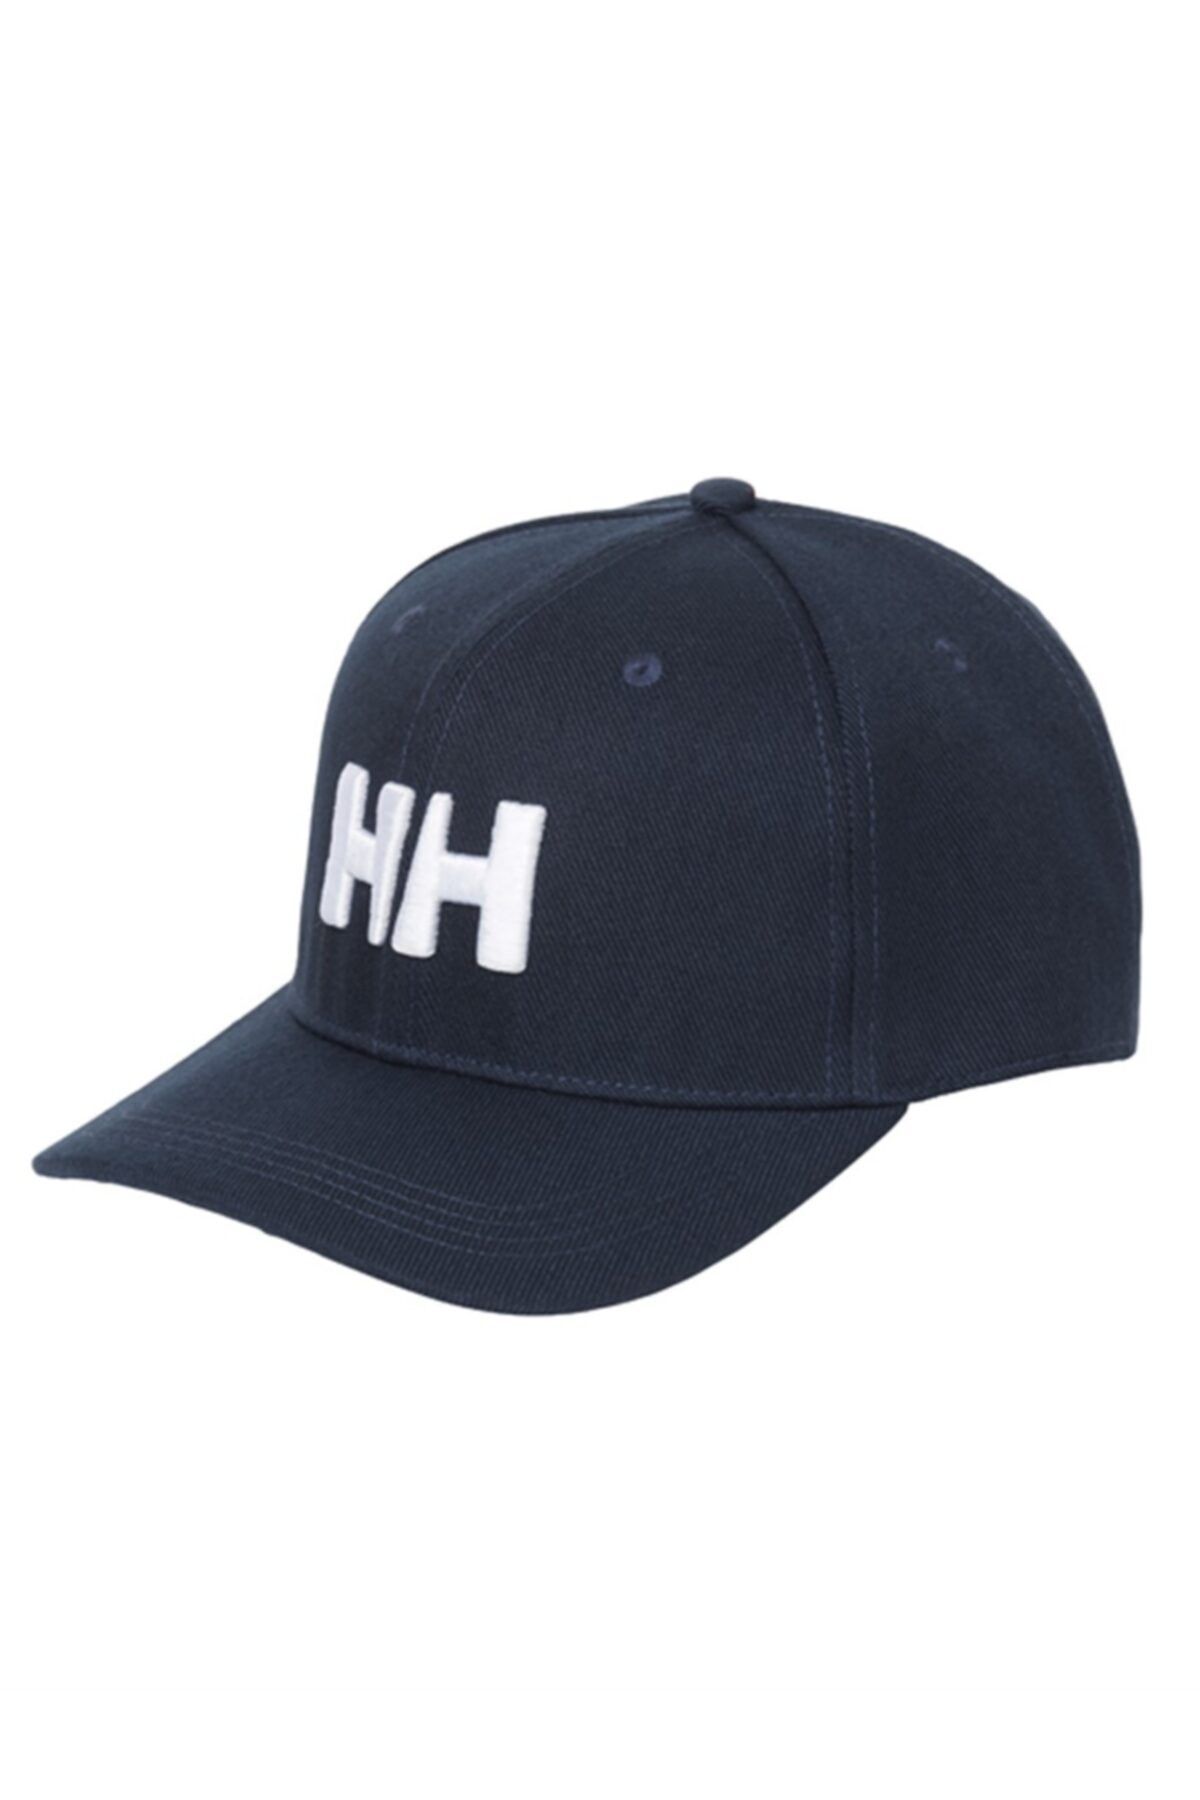 Helly Hansen Hh Hh Brand Cap